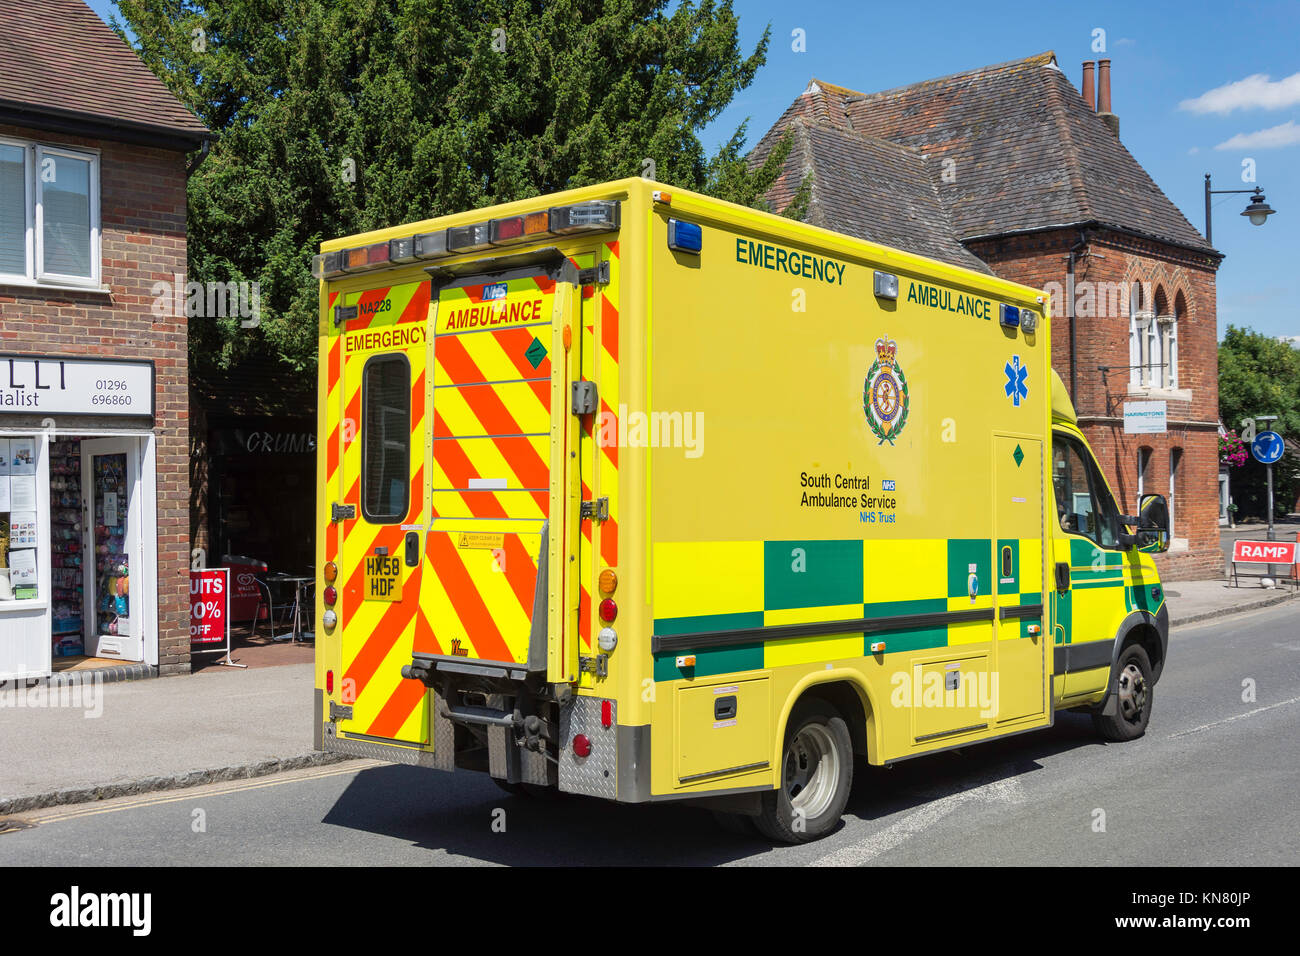 South Central ambulanza sulla chiamata, High Street, Wendover, Buckinghamshire, Inghilterra, Regno Unito Foto Stock